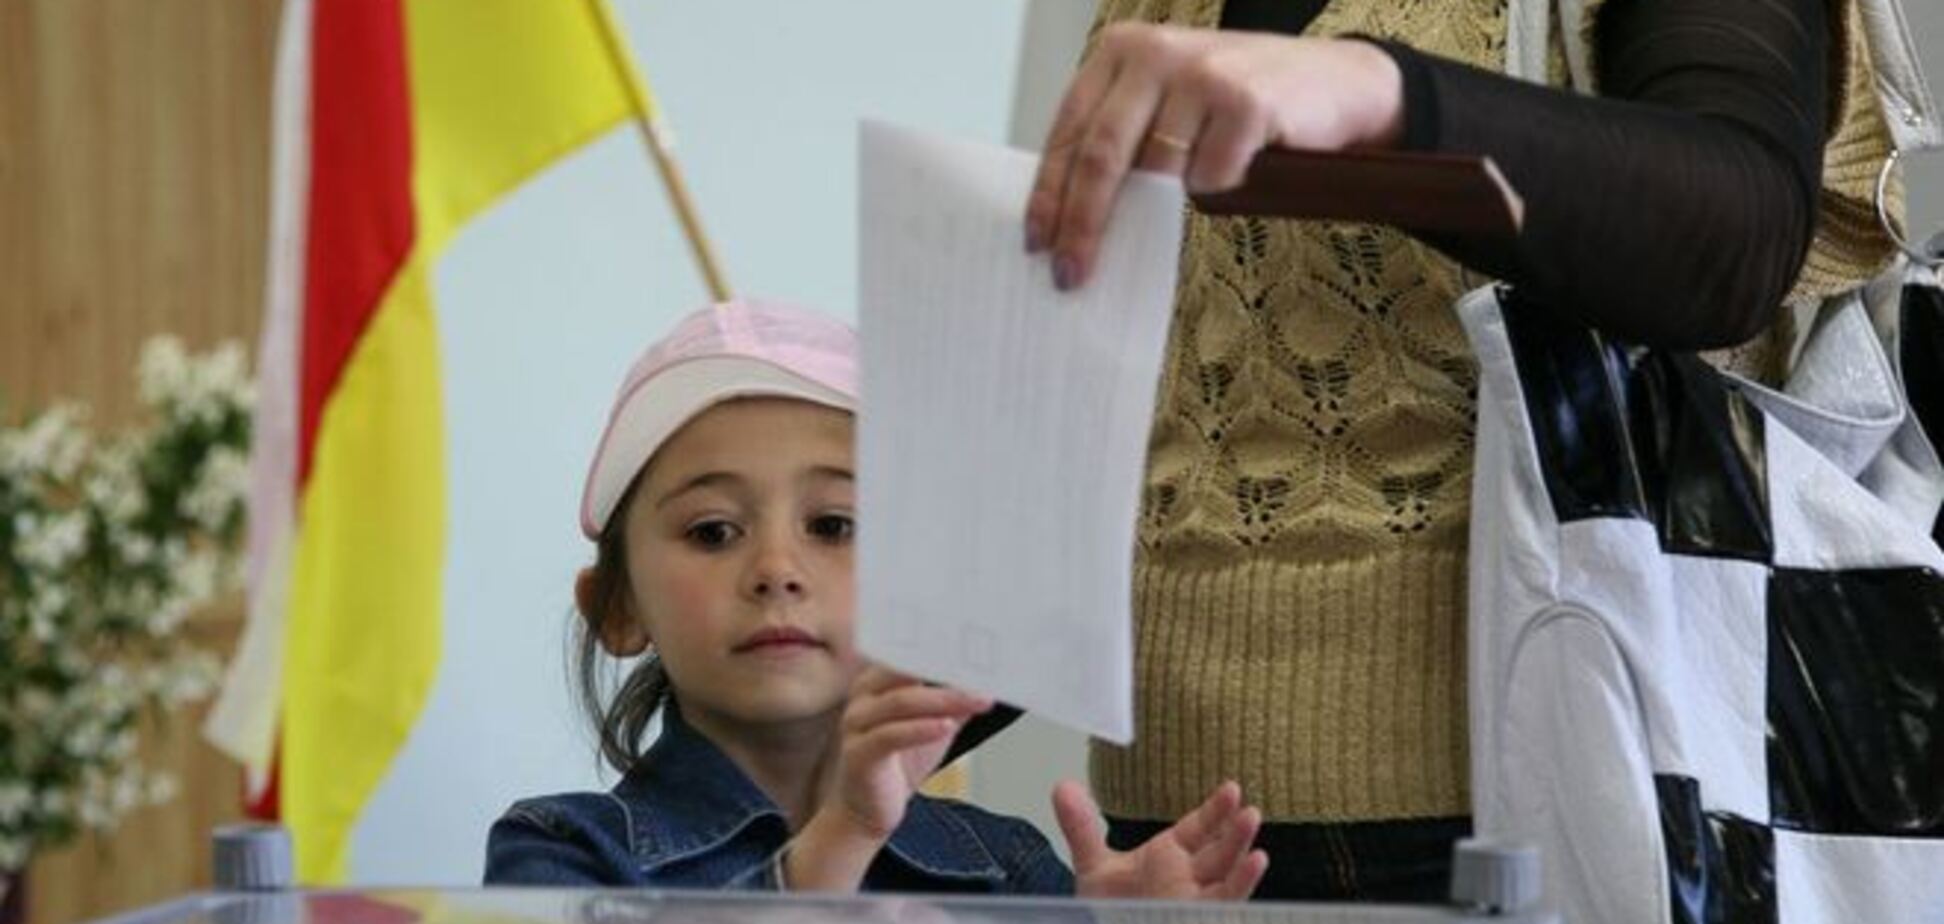 Україна не визнає парламентські вибори в Південній Осетії - МЗС